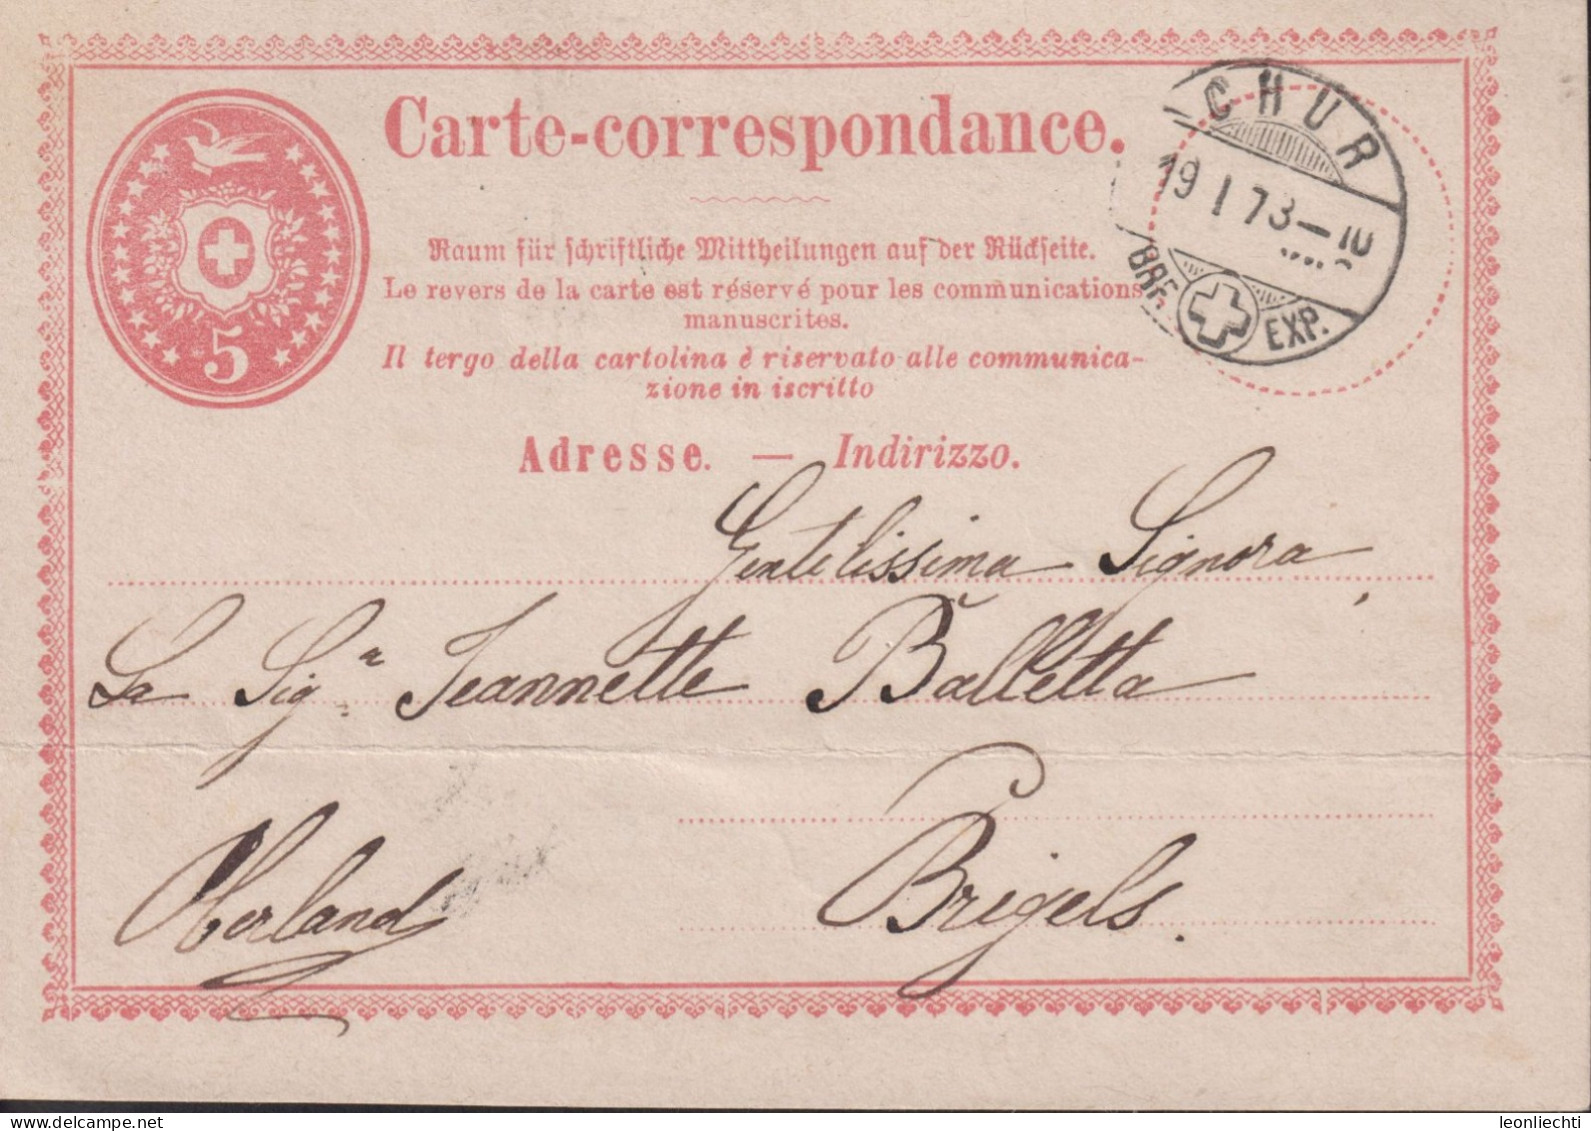 1870 Schweiz Carte-correspondance, Zum:1. 5 Cts Karmin ⵙ CHUR 19.1.73 - Stamped Stationery